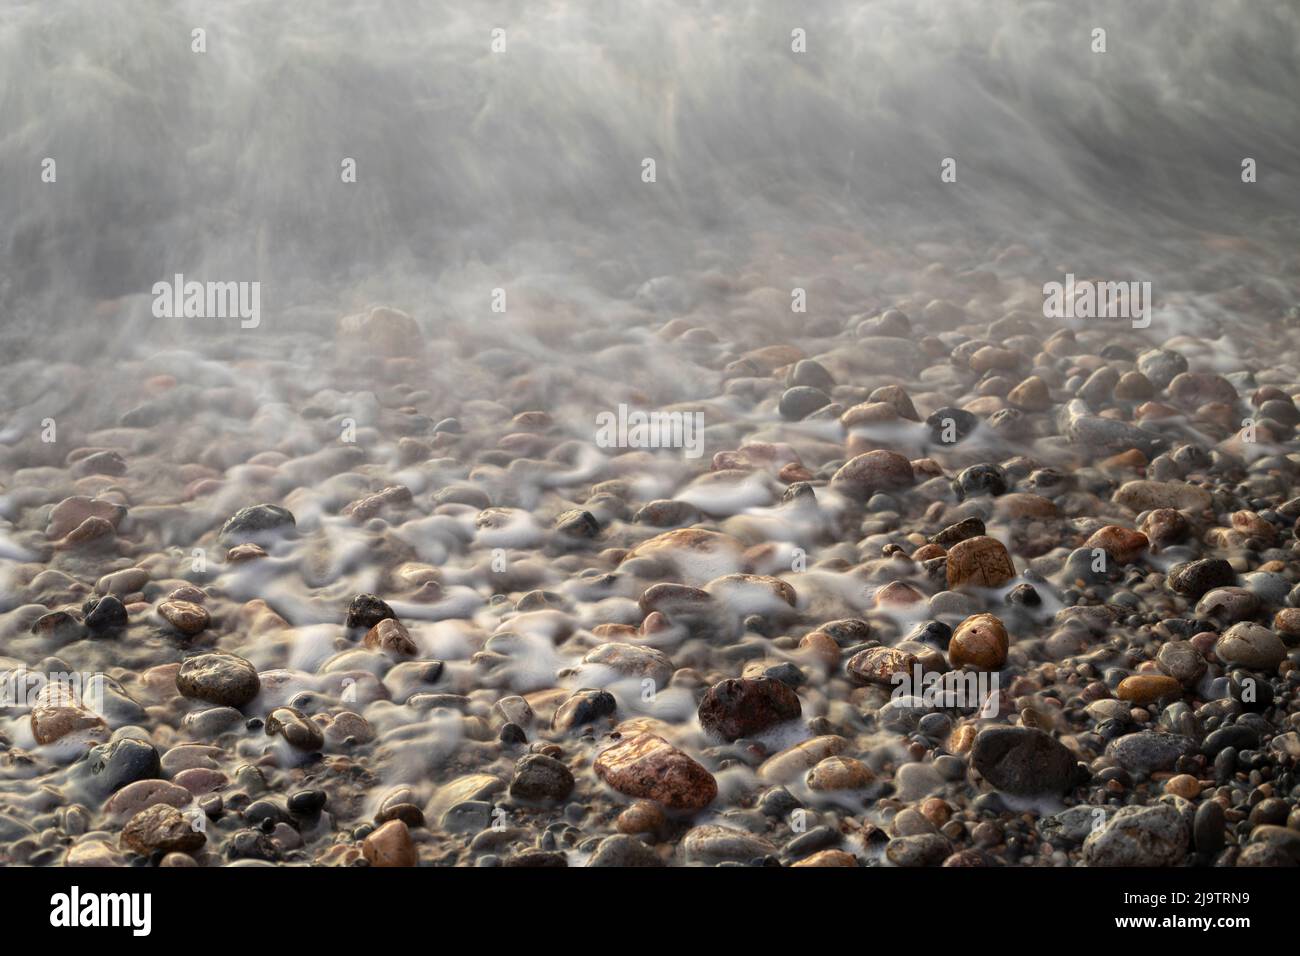 Cantos rodados en una playa que expresa tranquilidad y calma Stock Photo